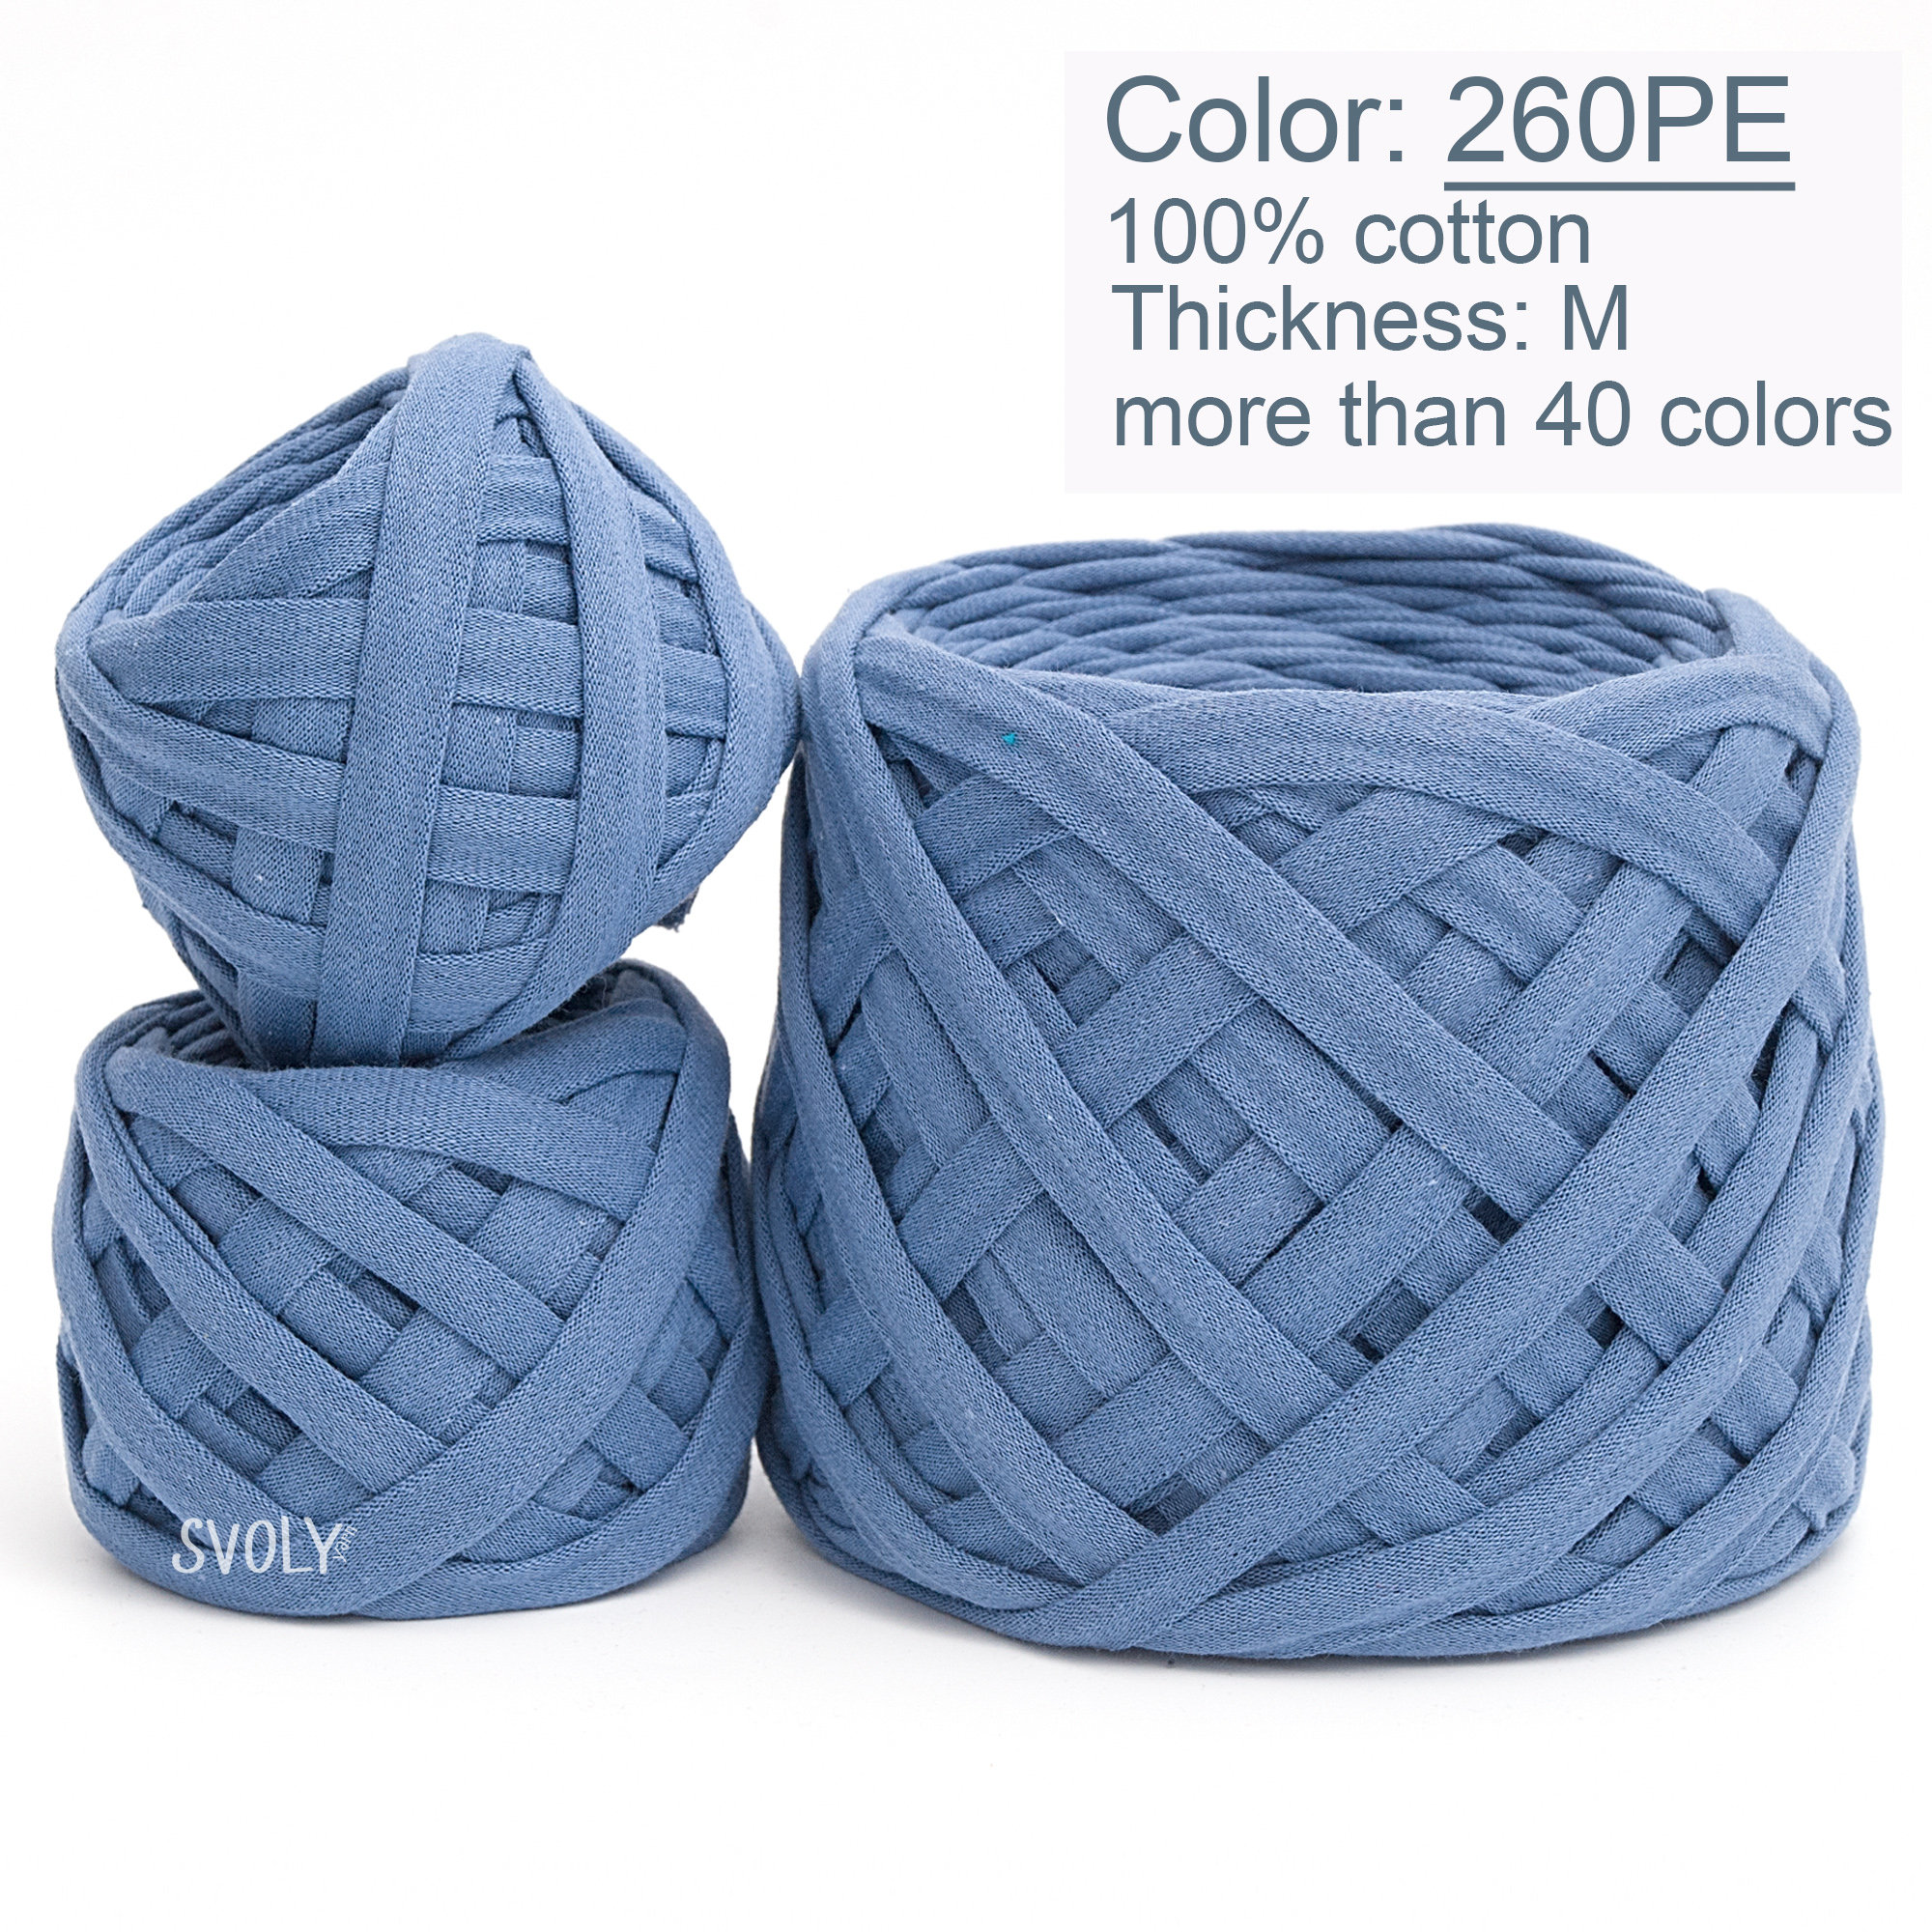 Tshirt Cotton Knitting Yarn, Trapillo Yarn Ball, Crochet Home Decor Yarn  Fro Bags, Baskets, Carpets, Macrame, Blue